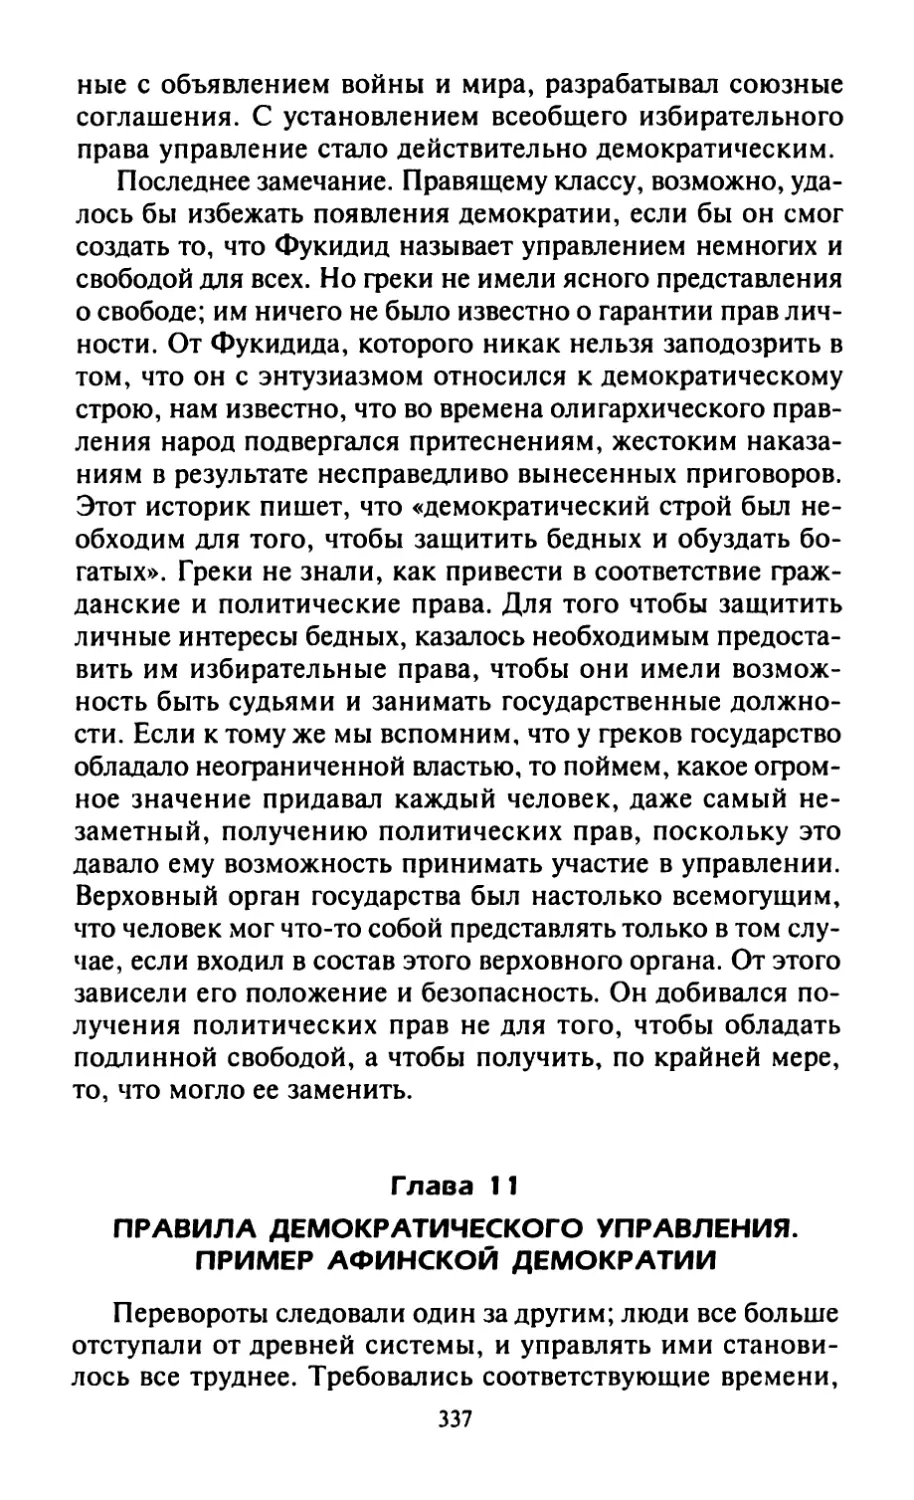 Глава 11. Правила демократического управления. Пример афинской демократии